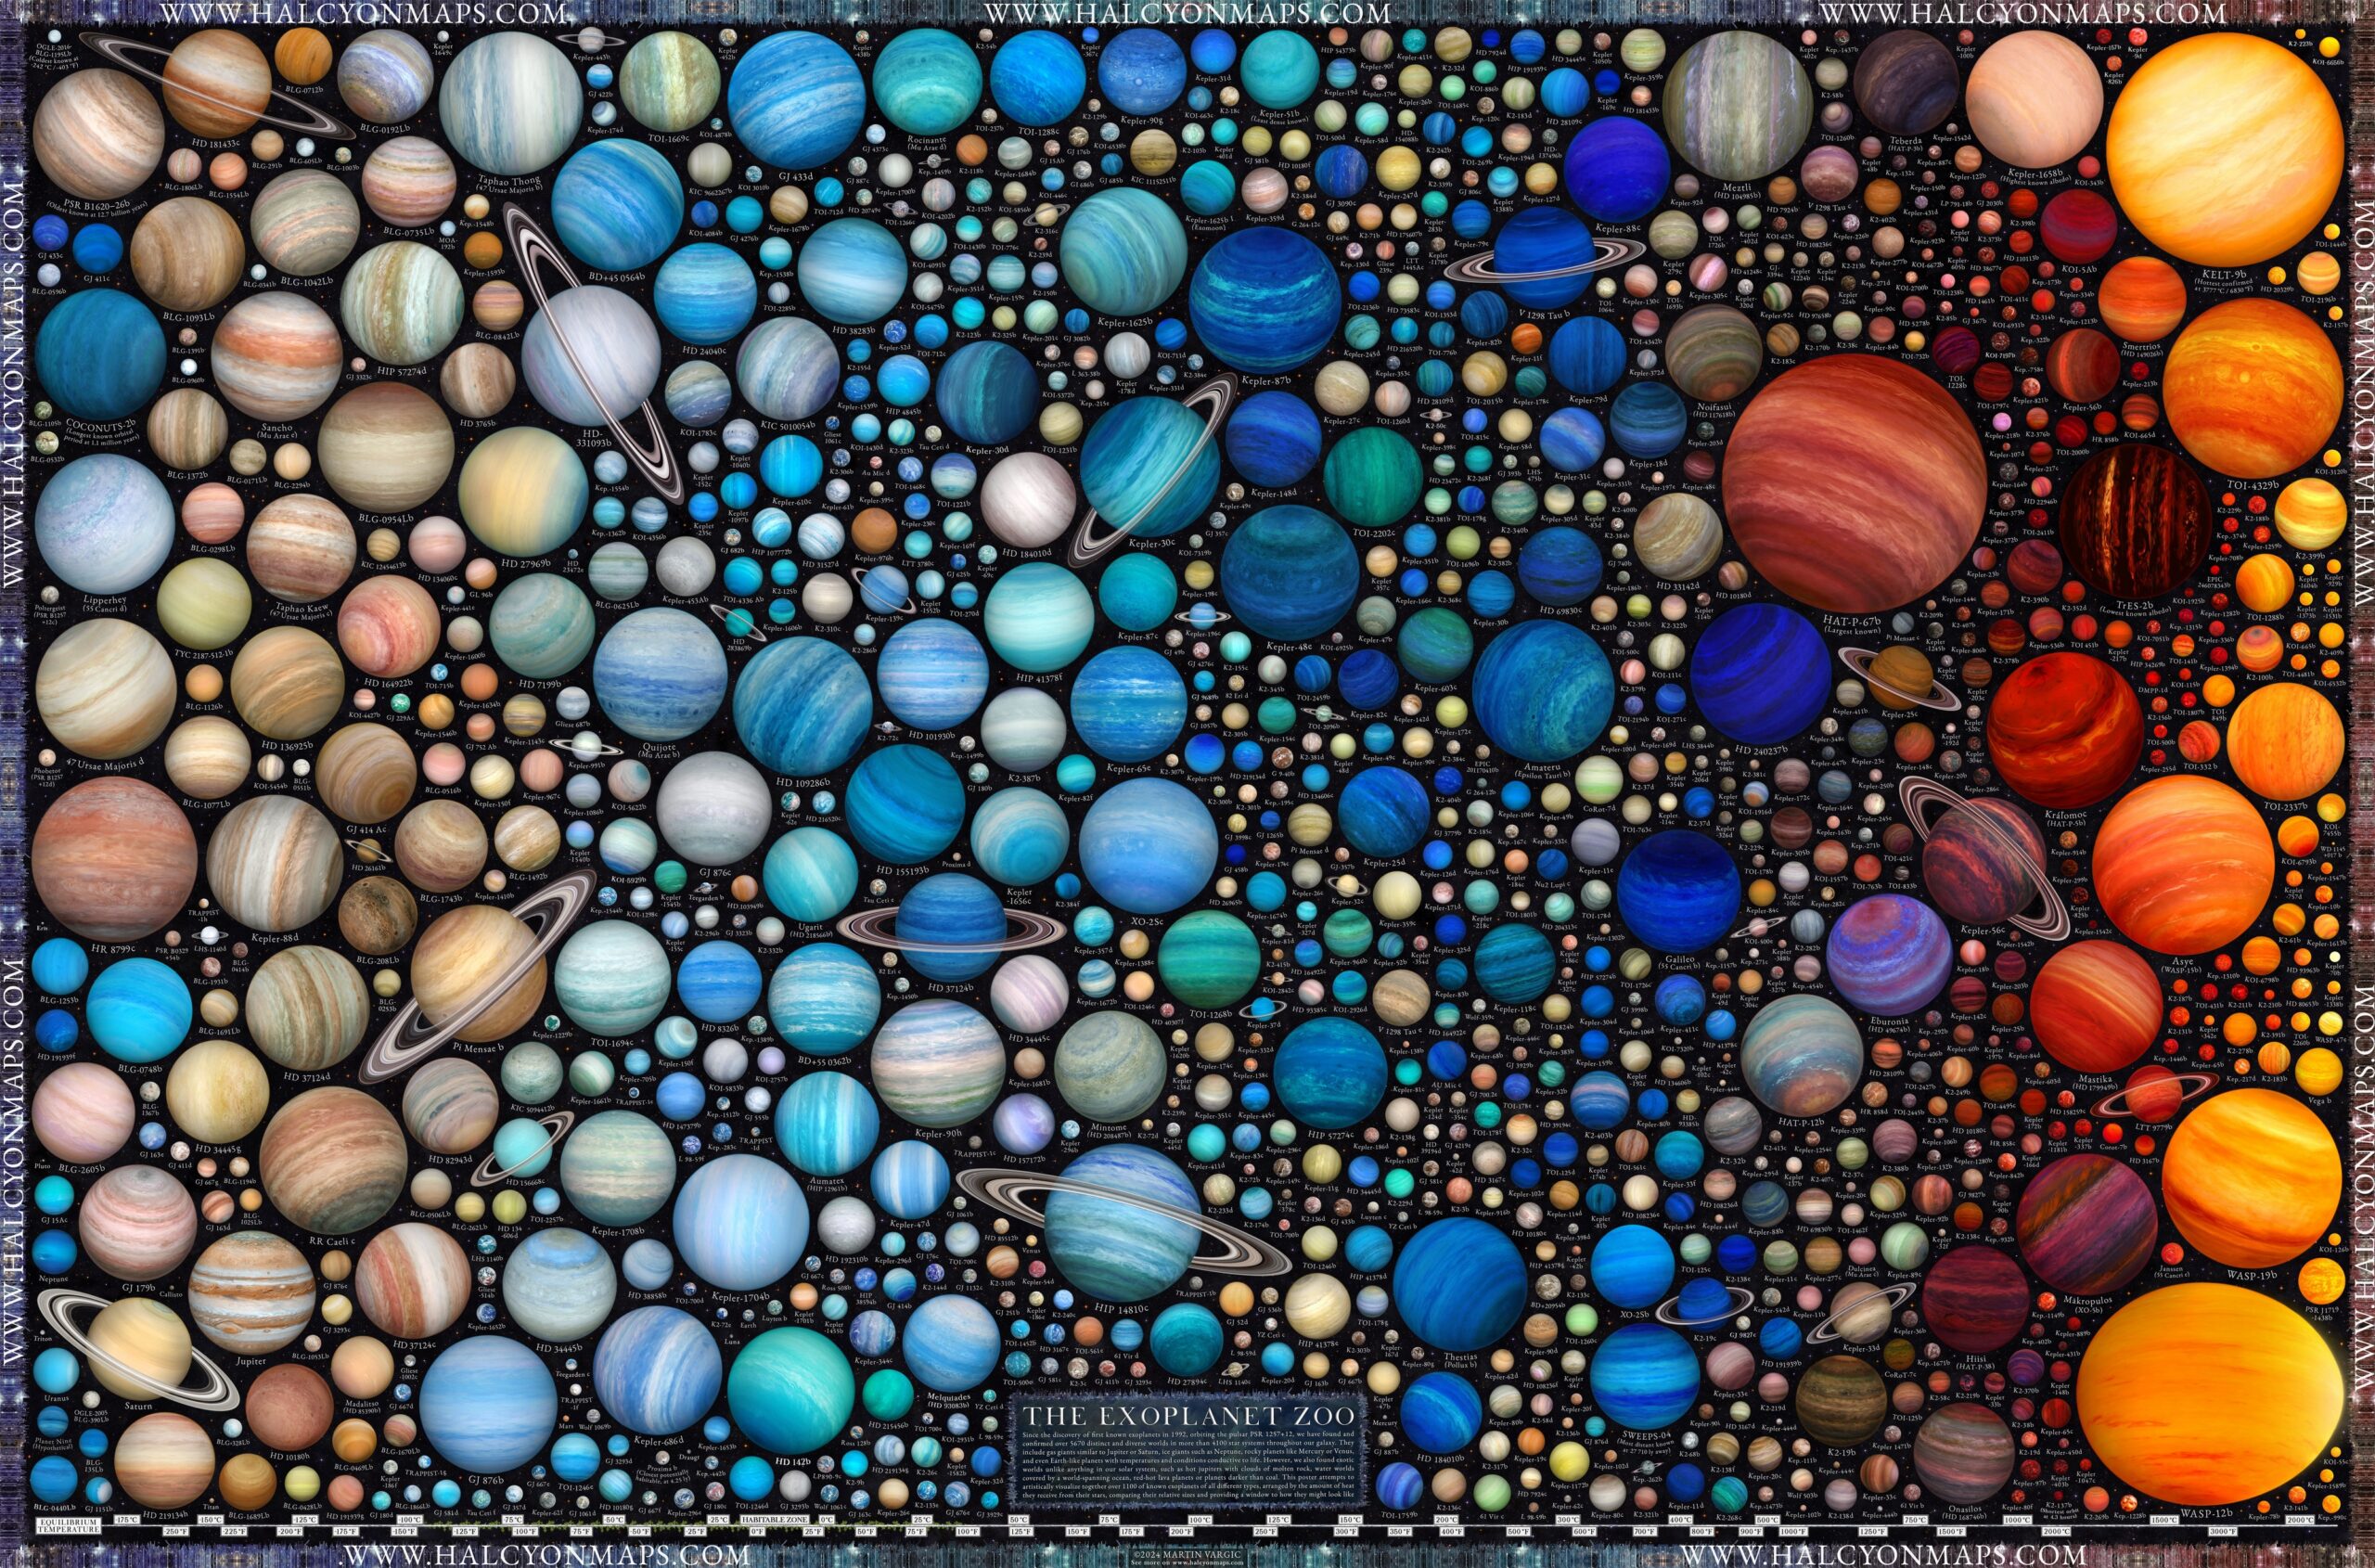 Астроном-любитель за полгода создал впечатляюще детализированные инфографики 1600 экзопланет